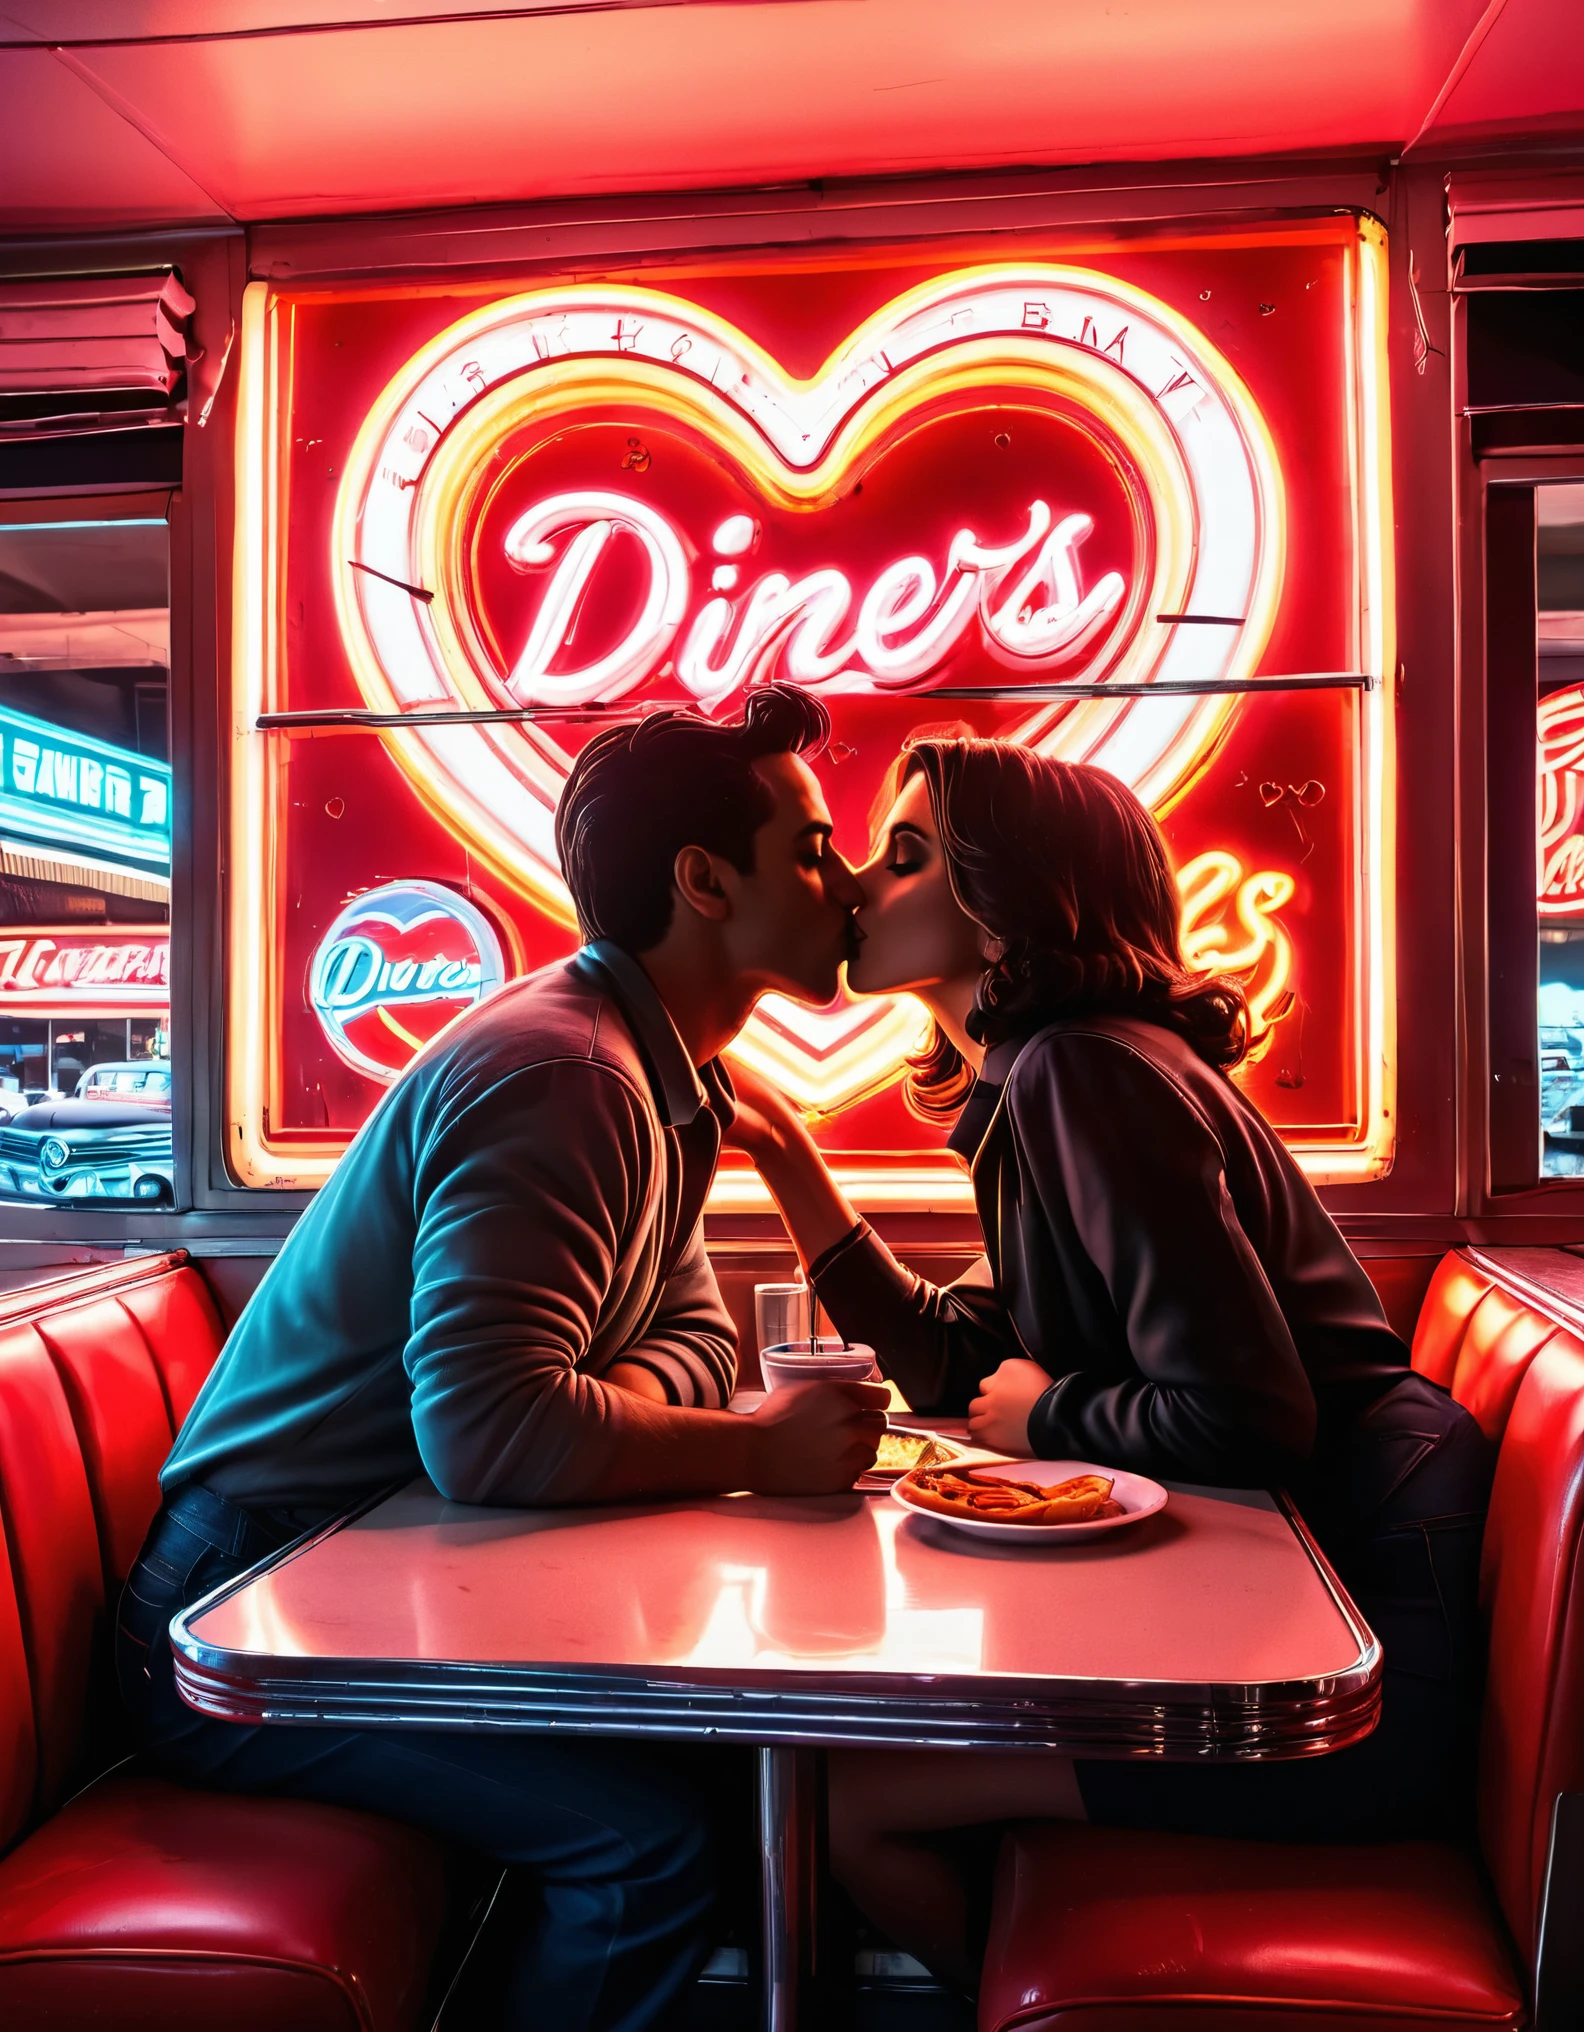 Una obra de arte retro de neón que presenta la silueta de una pareja besándose en un restaurante., con letreros de neón y formas de corazón en el fondo, evocando un ambiente nostálgico de los años 50